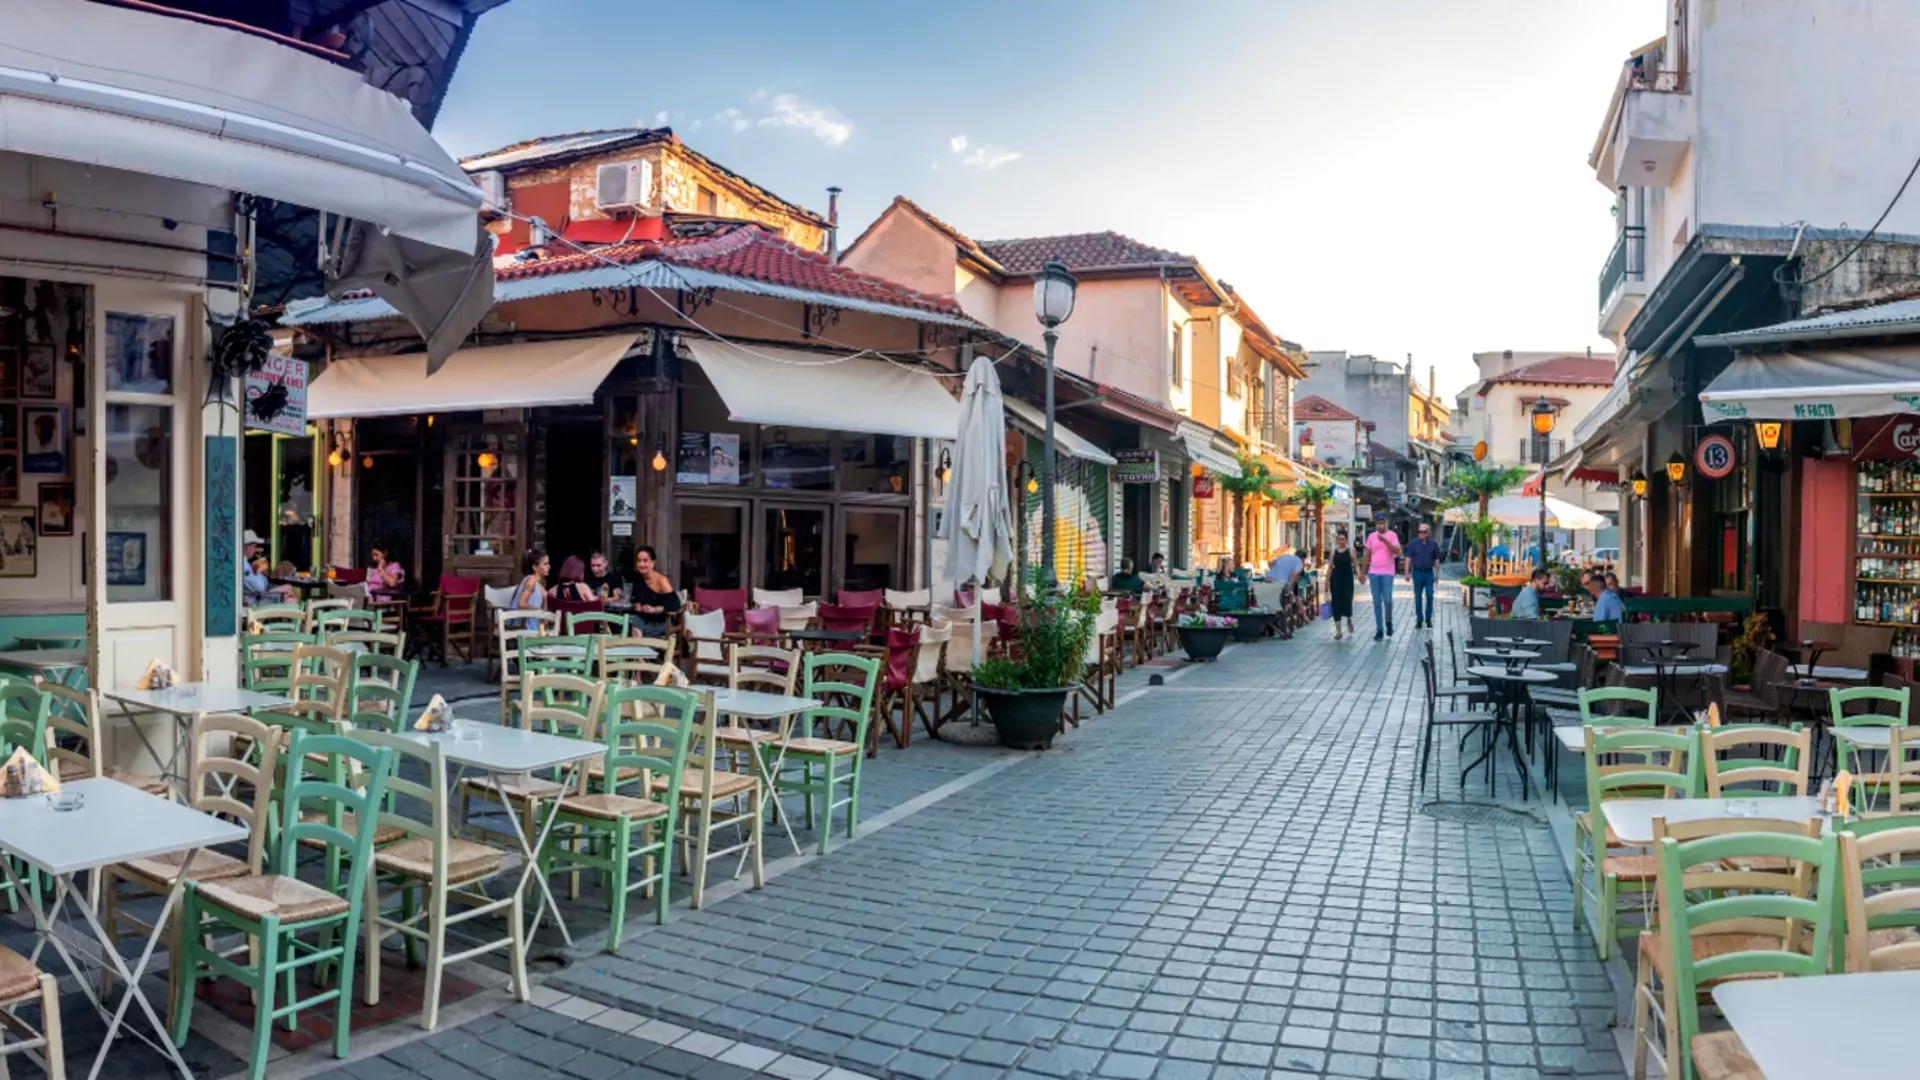 Ιωάννινα: Η παραμυθένια πόλη της Ηπείρου με την πλούσια ιστορία